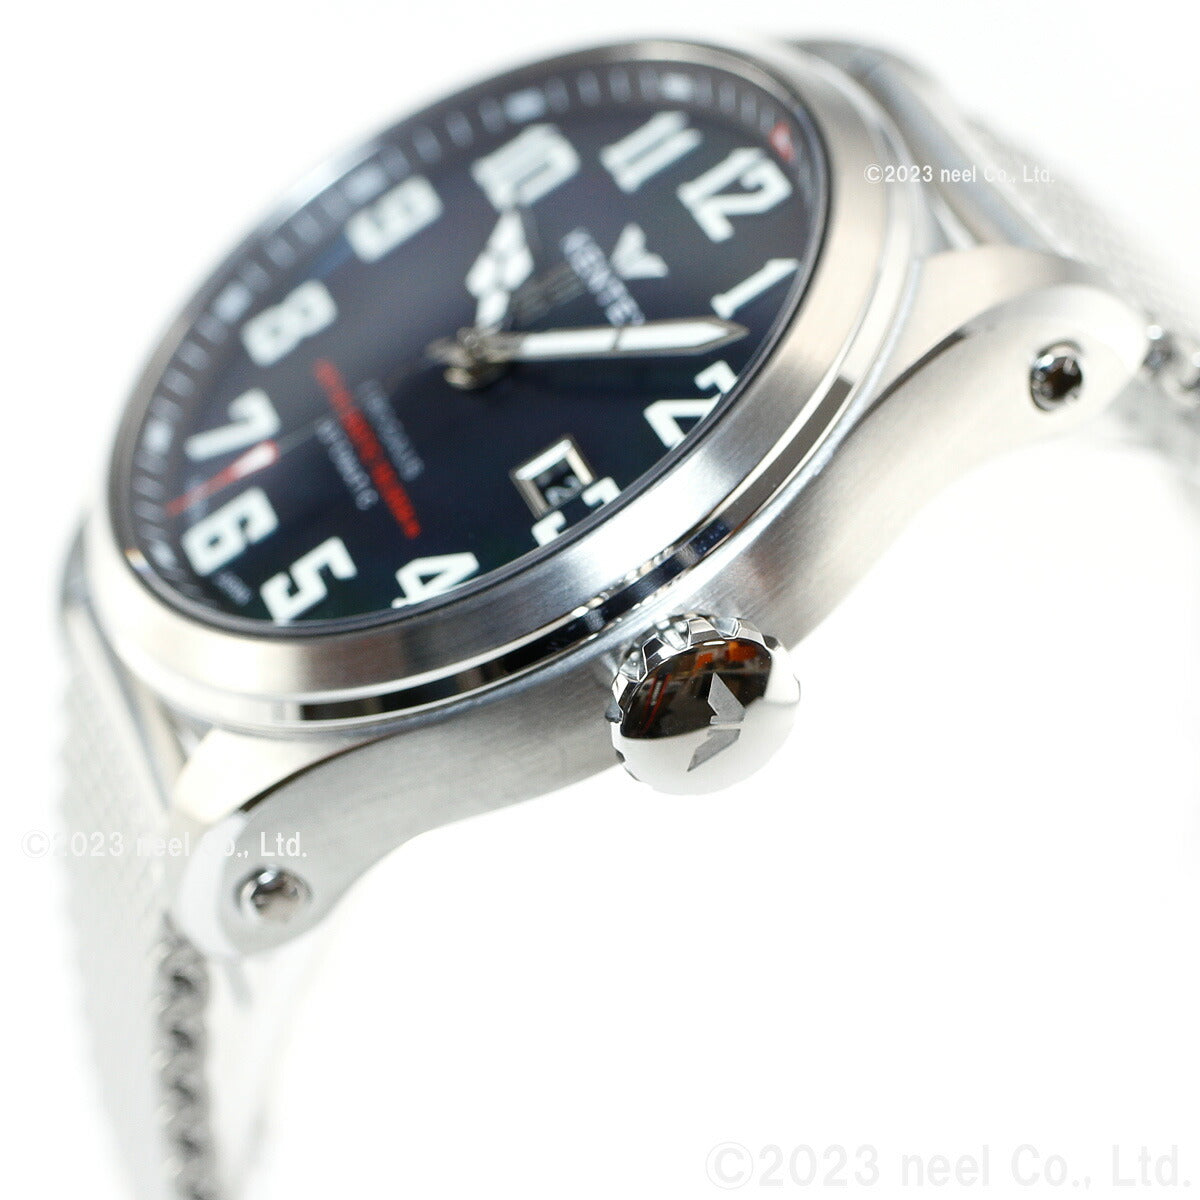 ケンテックス KENTEX 腕時計 時計 メンズ 耐磁時計 自動巻き プロガウス 日本製 S769X-6